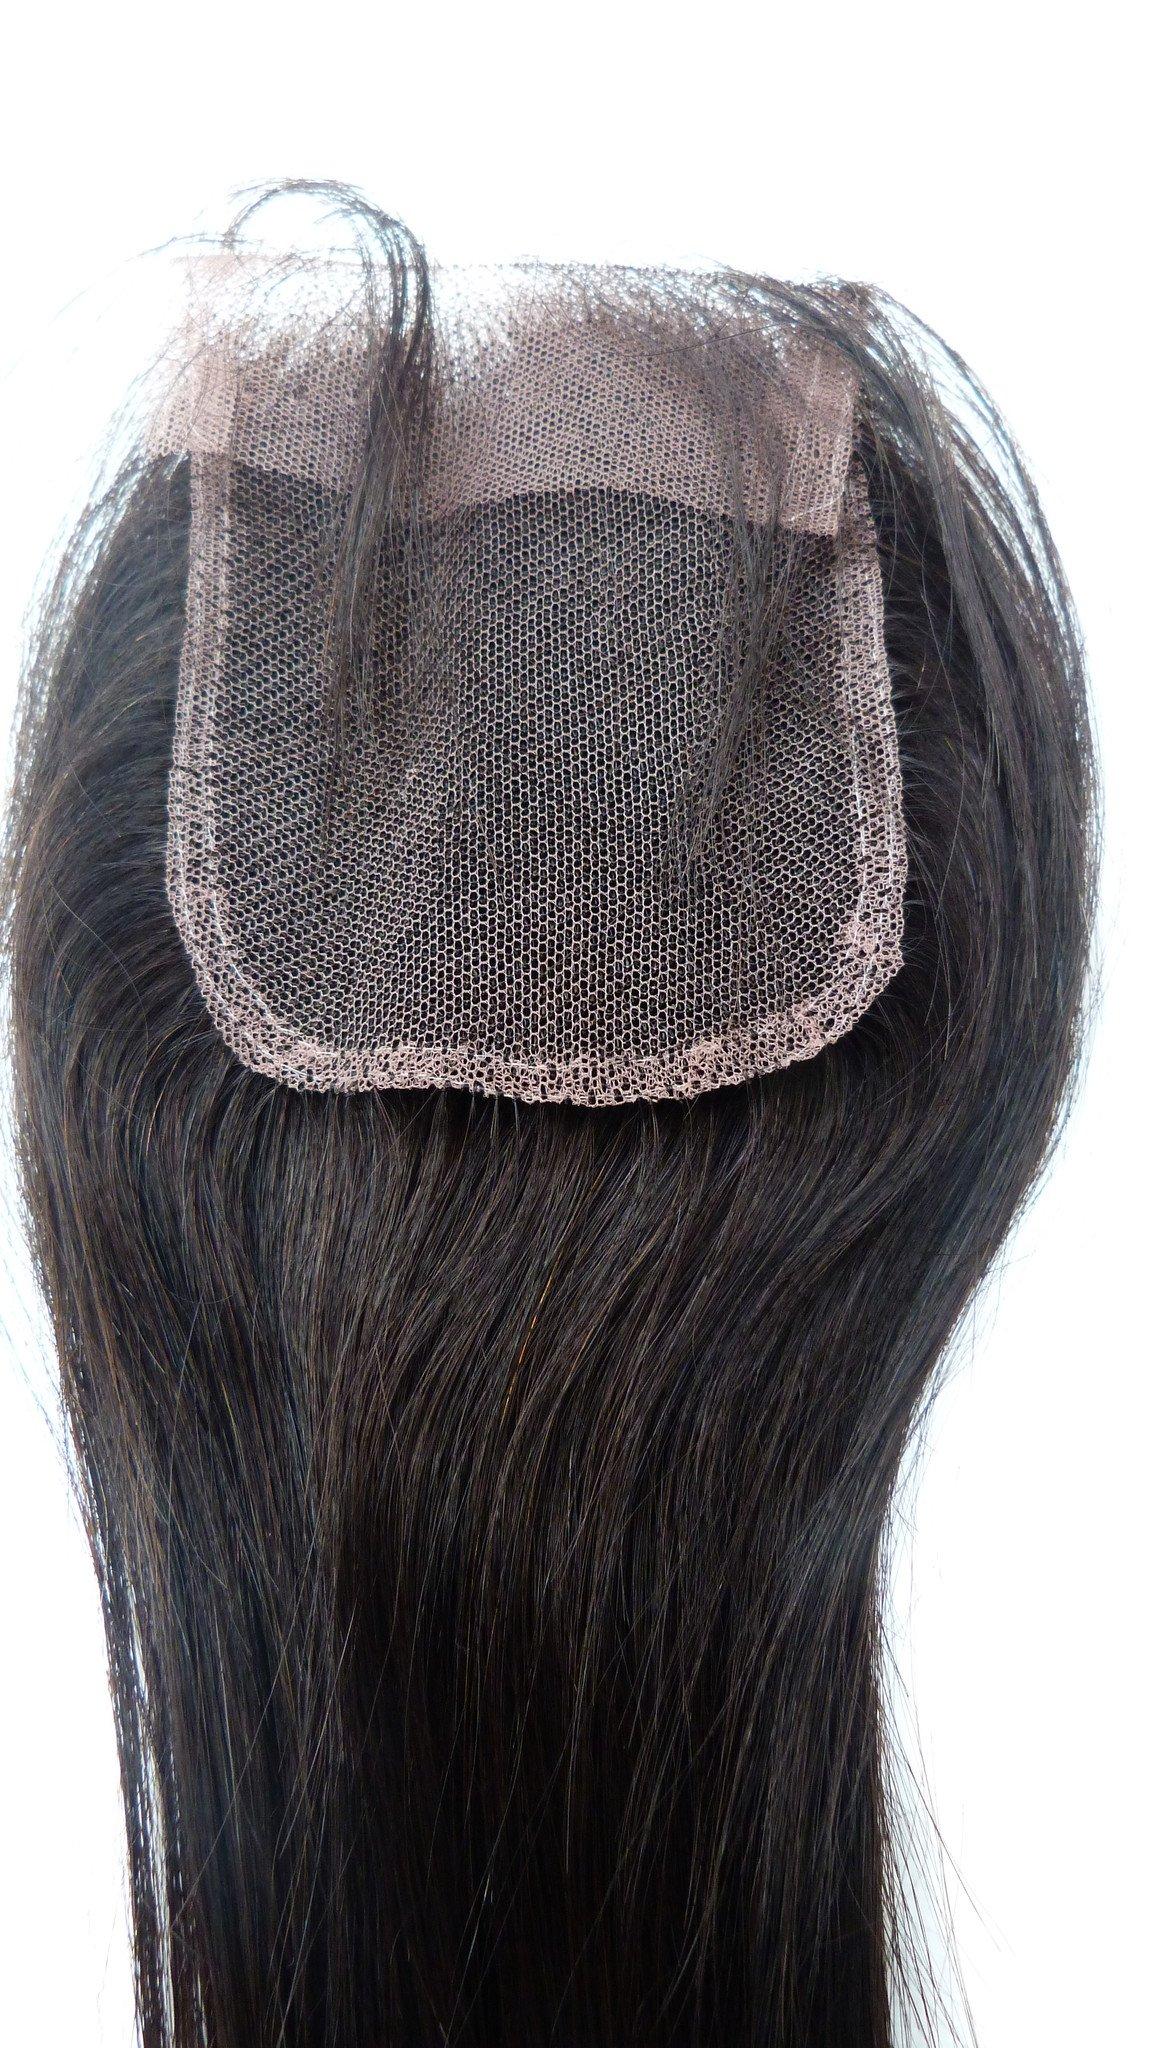 Fermeture supérieure en dentelle indienne vierge Remy – 8,9 x 10,2 cm – Cheveux vierges et beauté, les meilleures extensions de cheveux, vrais cheveux humains vierges.